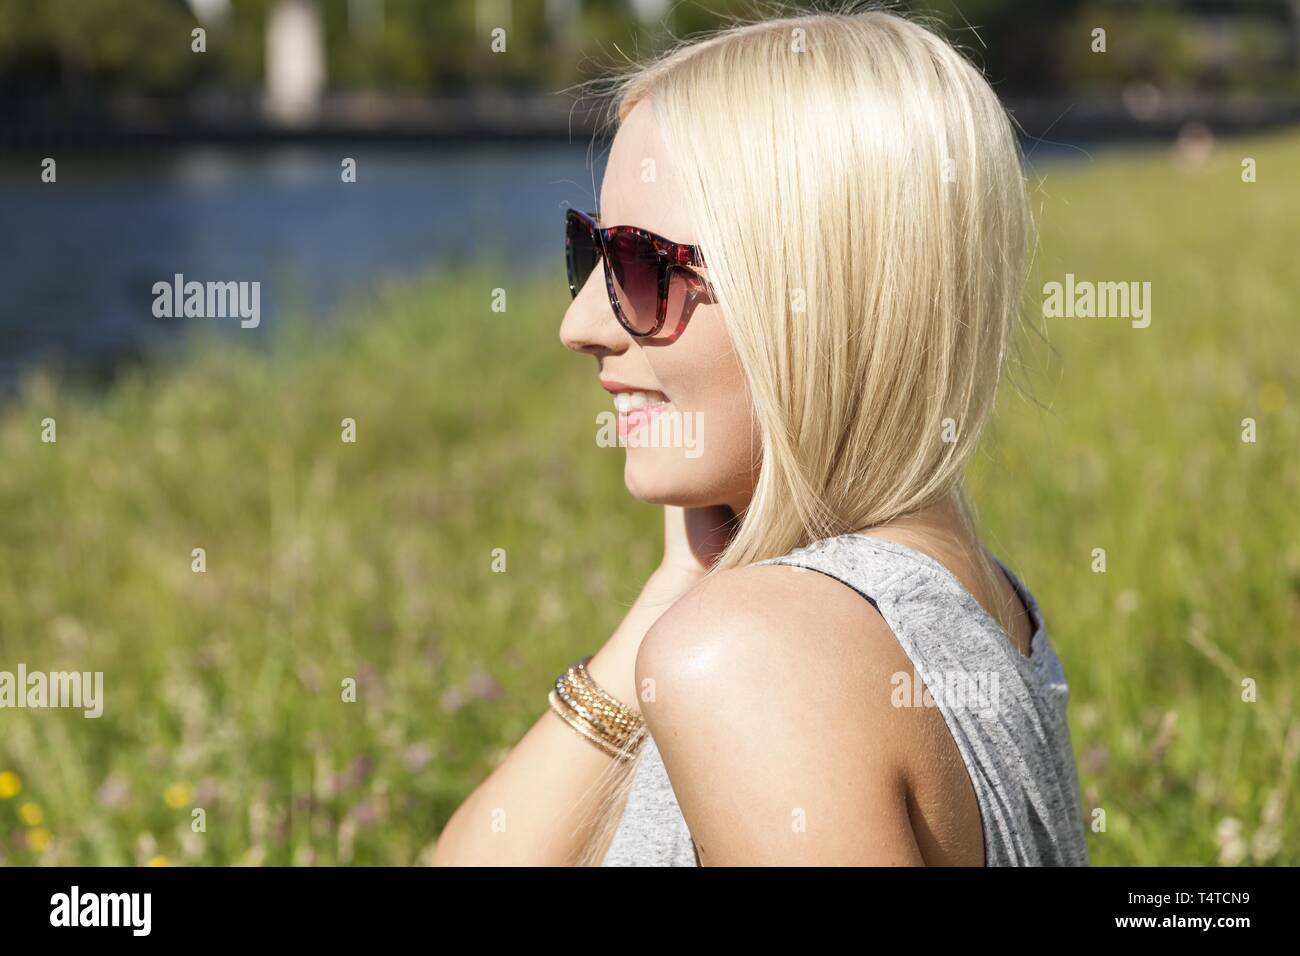 Adolescente con gafas de sol Foto de stock